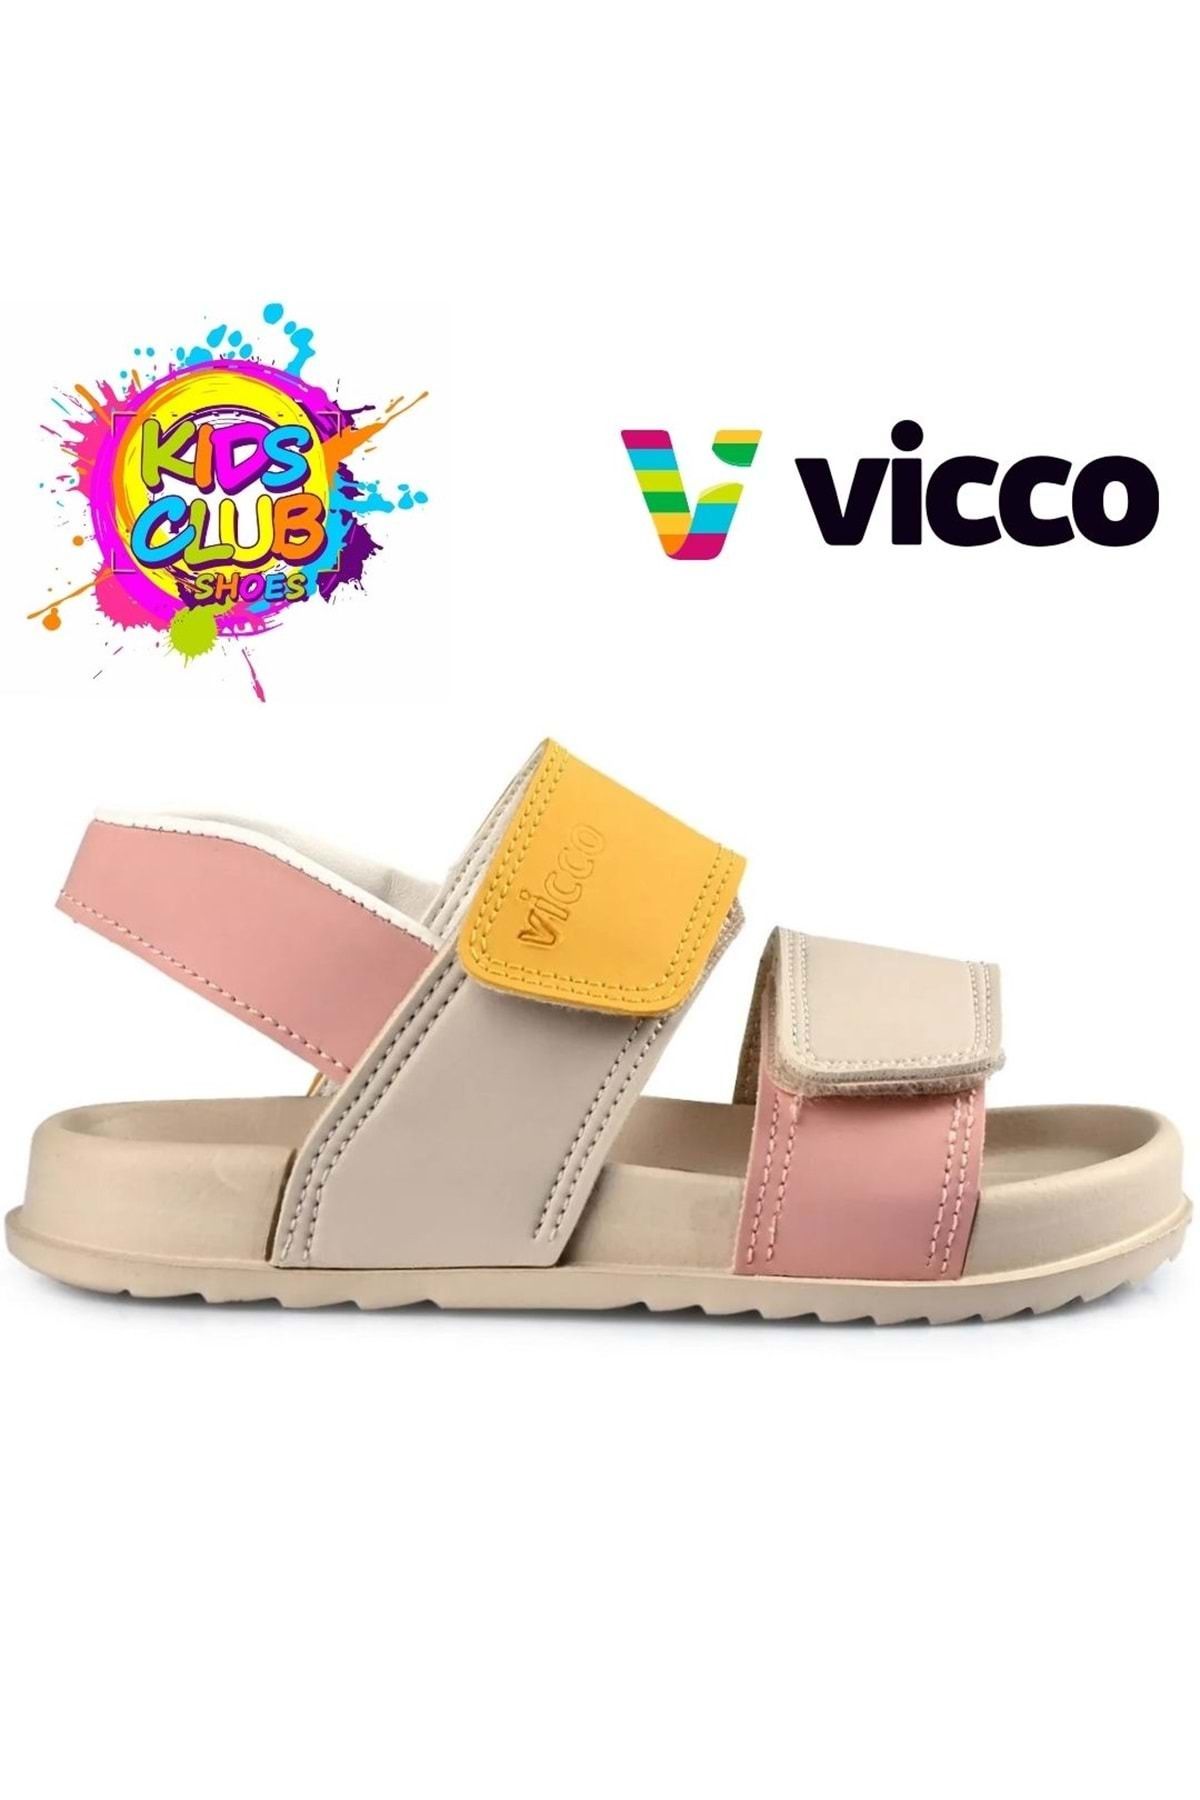 Kids Club Shoes Vicco Krixi Ortopedik Çocuk Sandalet BEJ